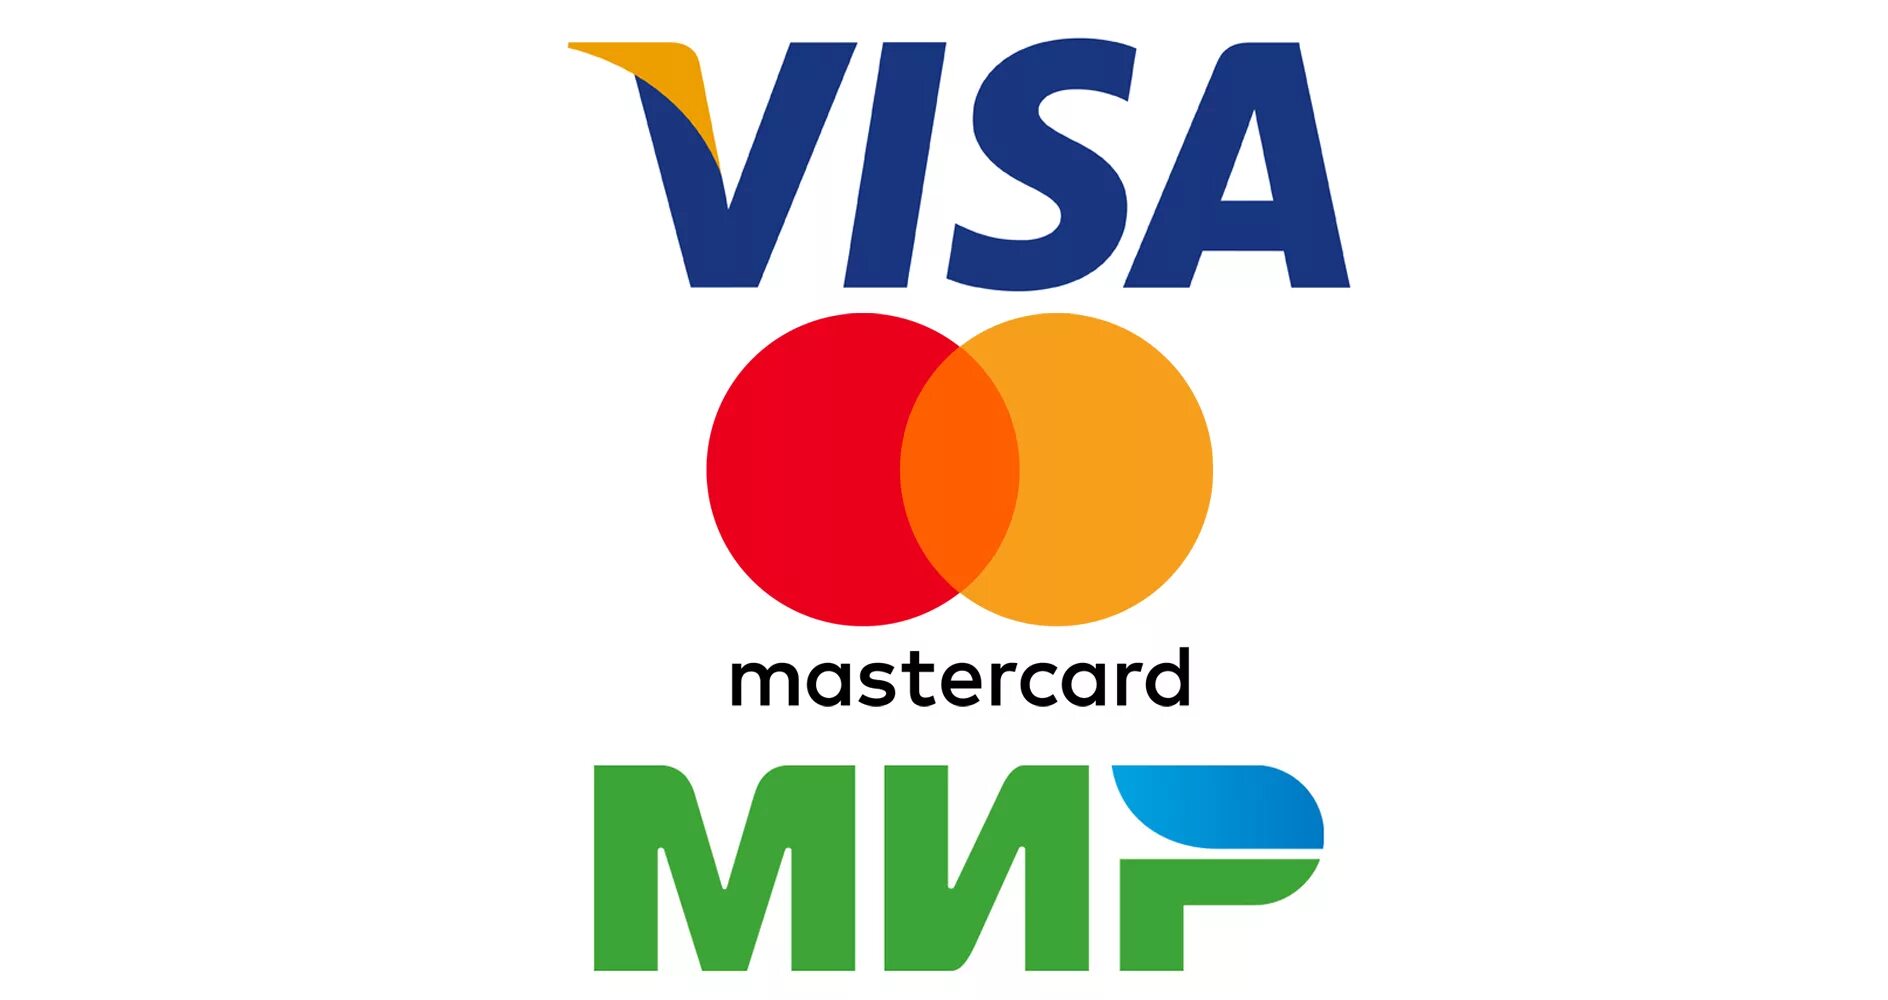 Мир оплата спб. Visa MASTERCARD мир. Логотип платежной системы visa. Оплата картой visa. Платежные системы мир виза Мастеркард.